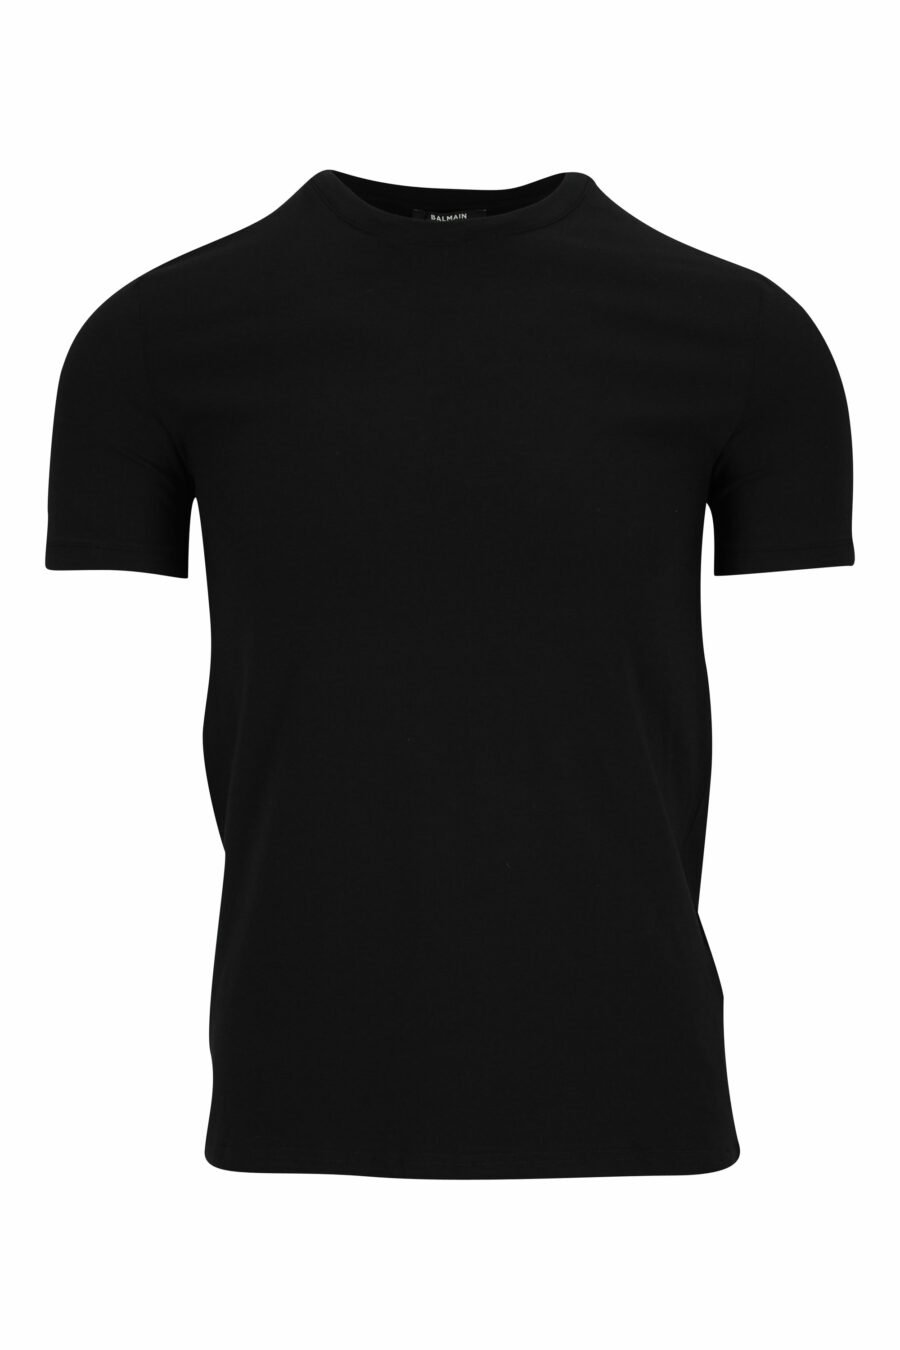 T-shirt noir avec mini-logo sur le col - 8032674524621